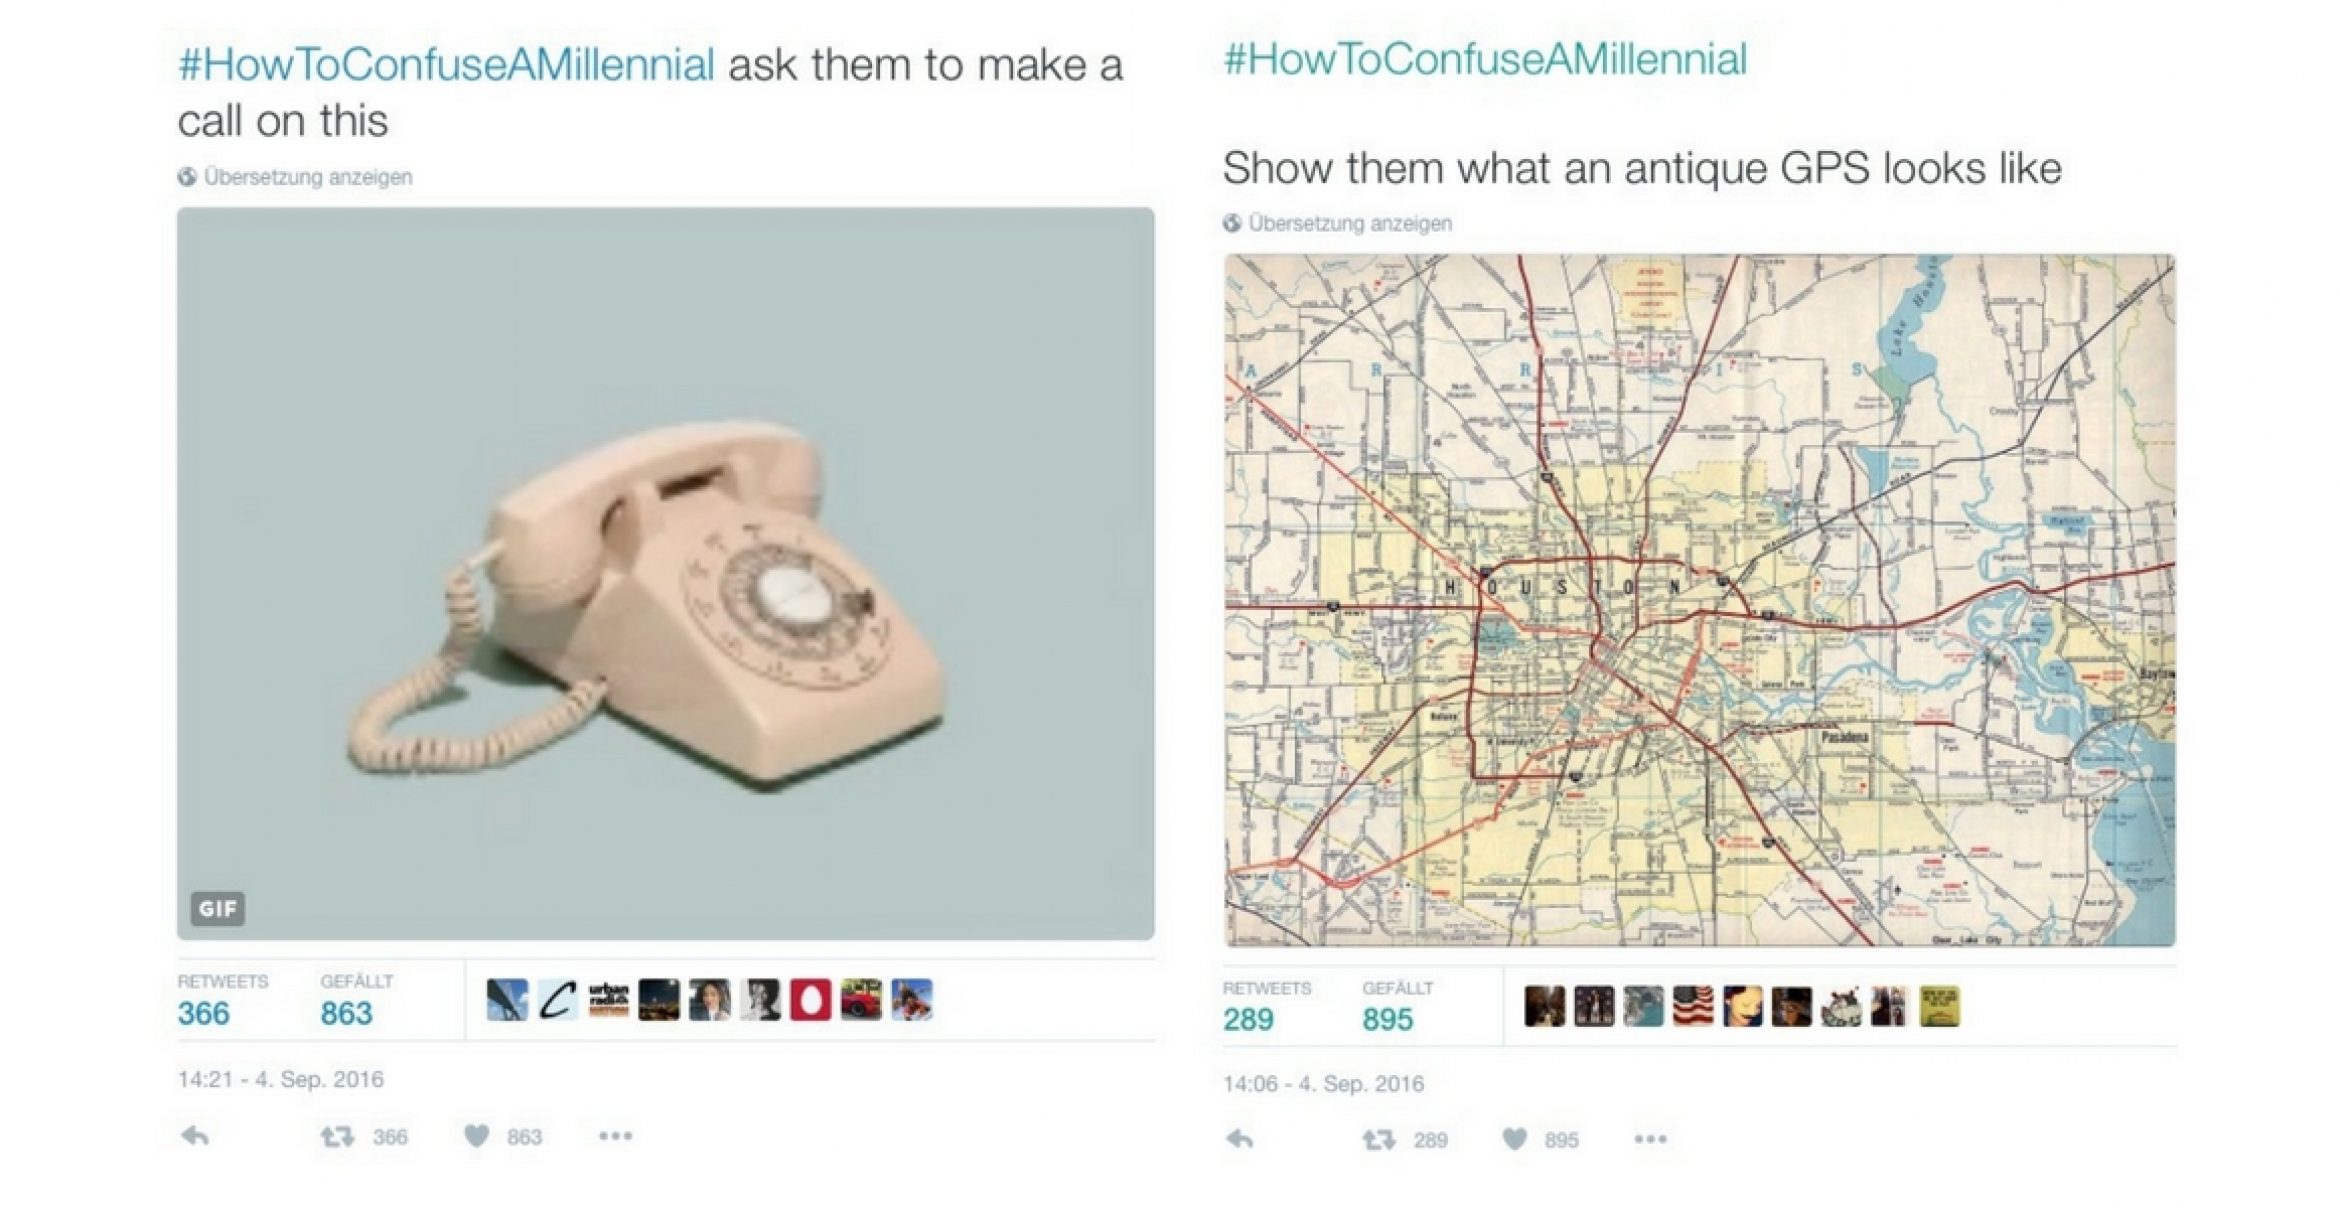 #HowToConfuseAMillennial: Diese Tweets fassen den Generationskonflikt großartig zusammen